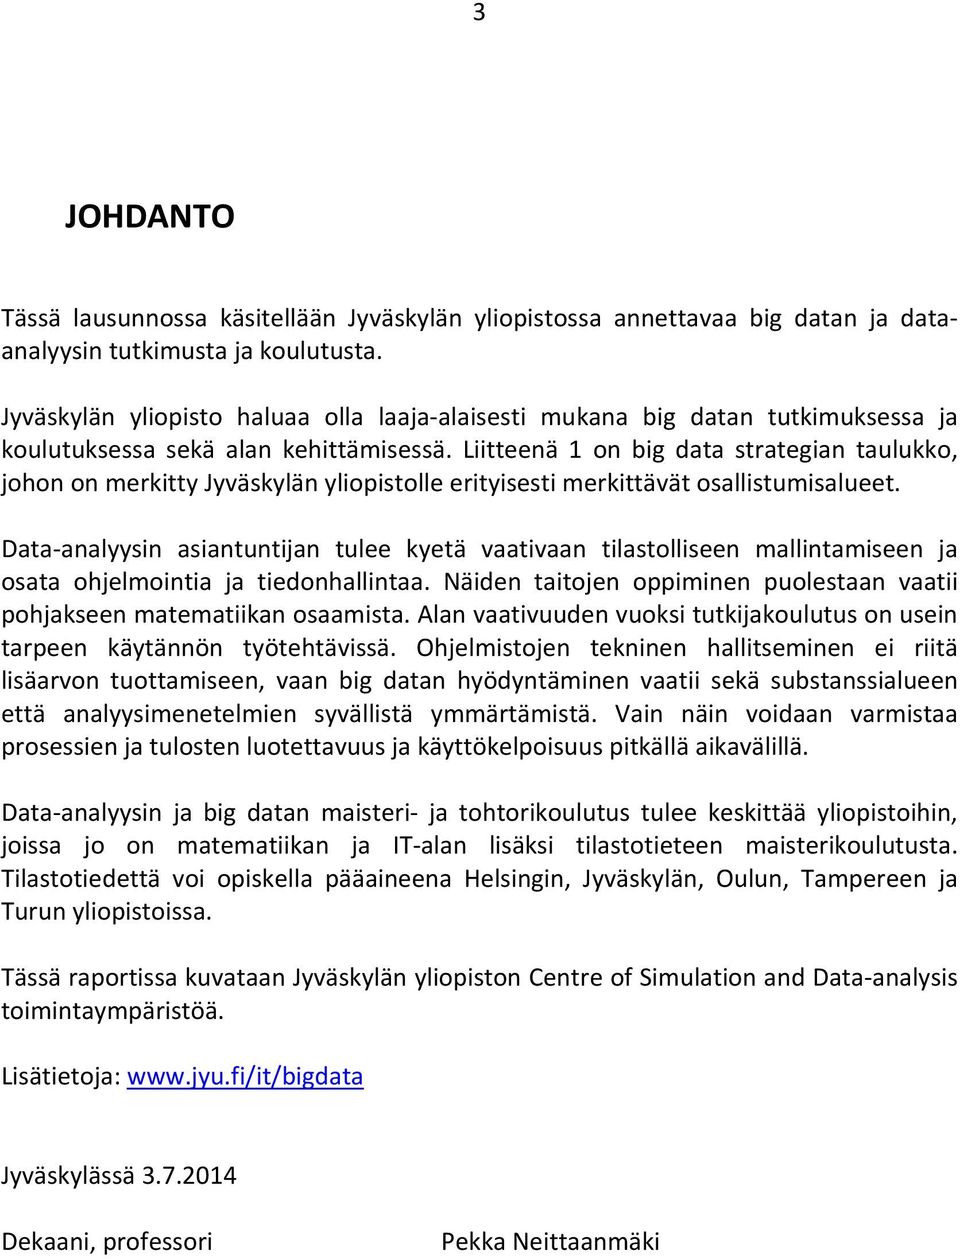 Liitteenä 1 on big data strategian taulukko, johon on merkitty Jyväskylän yliopistolle erityisesti merkittävät osallistumisalueet.